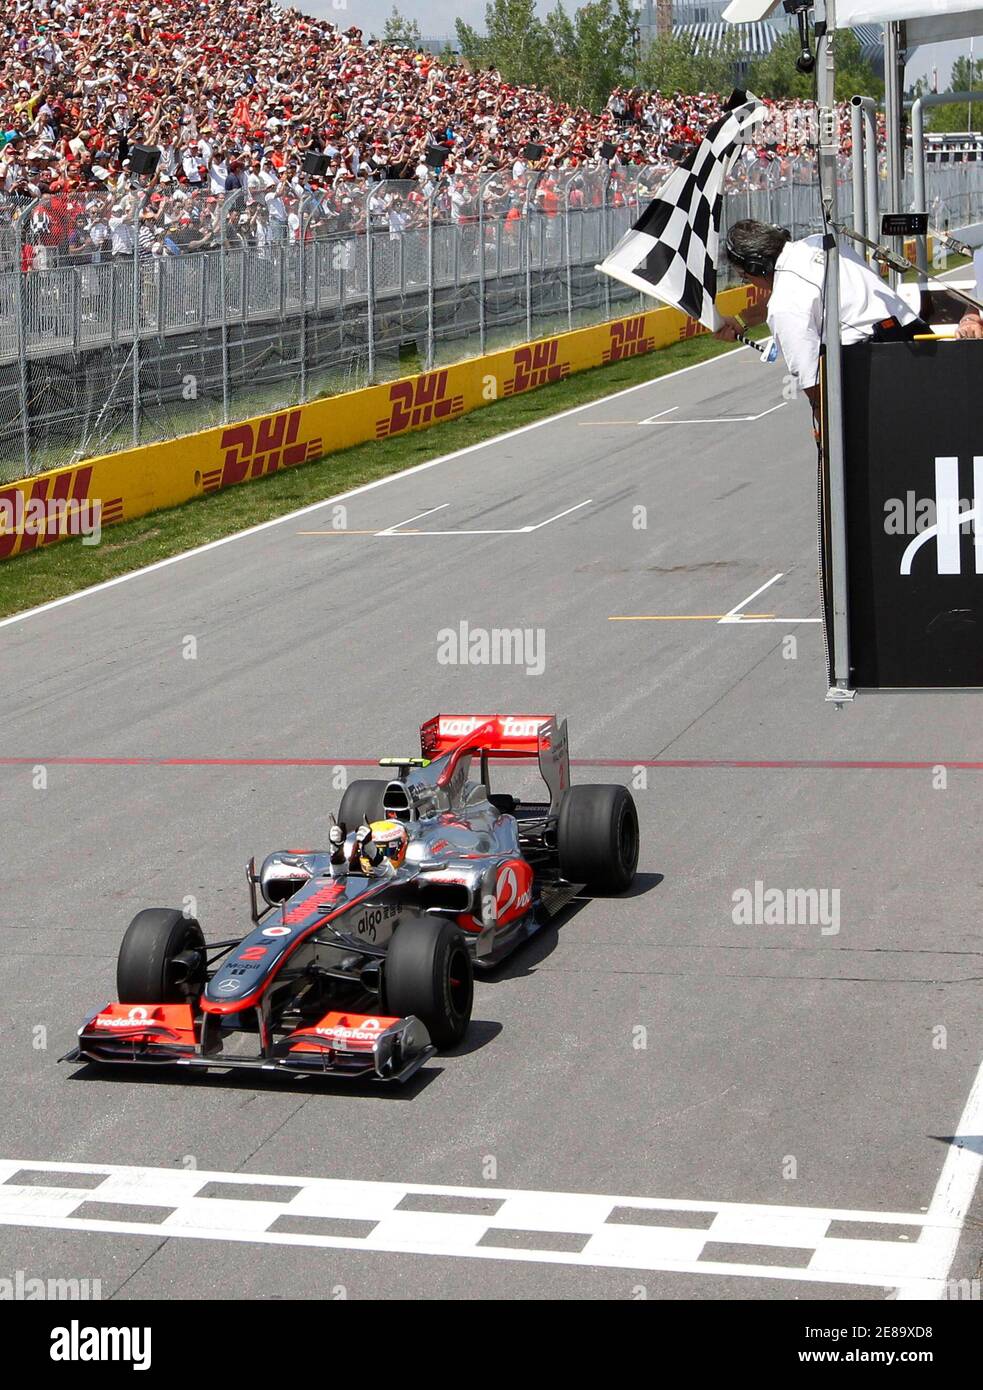 McLaren Formel1-Fahrer Lewis Hamilton von Großbritannien überquert die Ziellinie um den F1 Grand Prix von Kanada in Montreal 13. Juni 2010 zu gewinnen. REUTERS/Chris Wattie (Kanada - Tags: SPORT Motorsport) Stockfoto